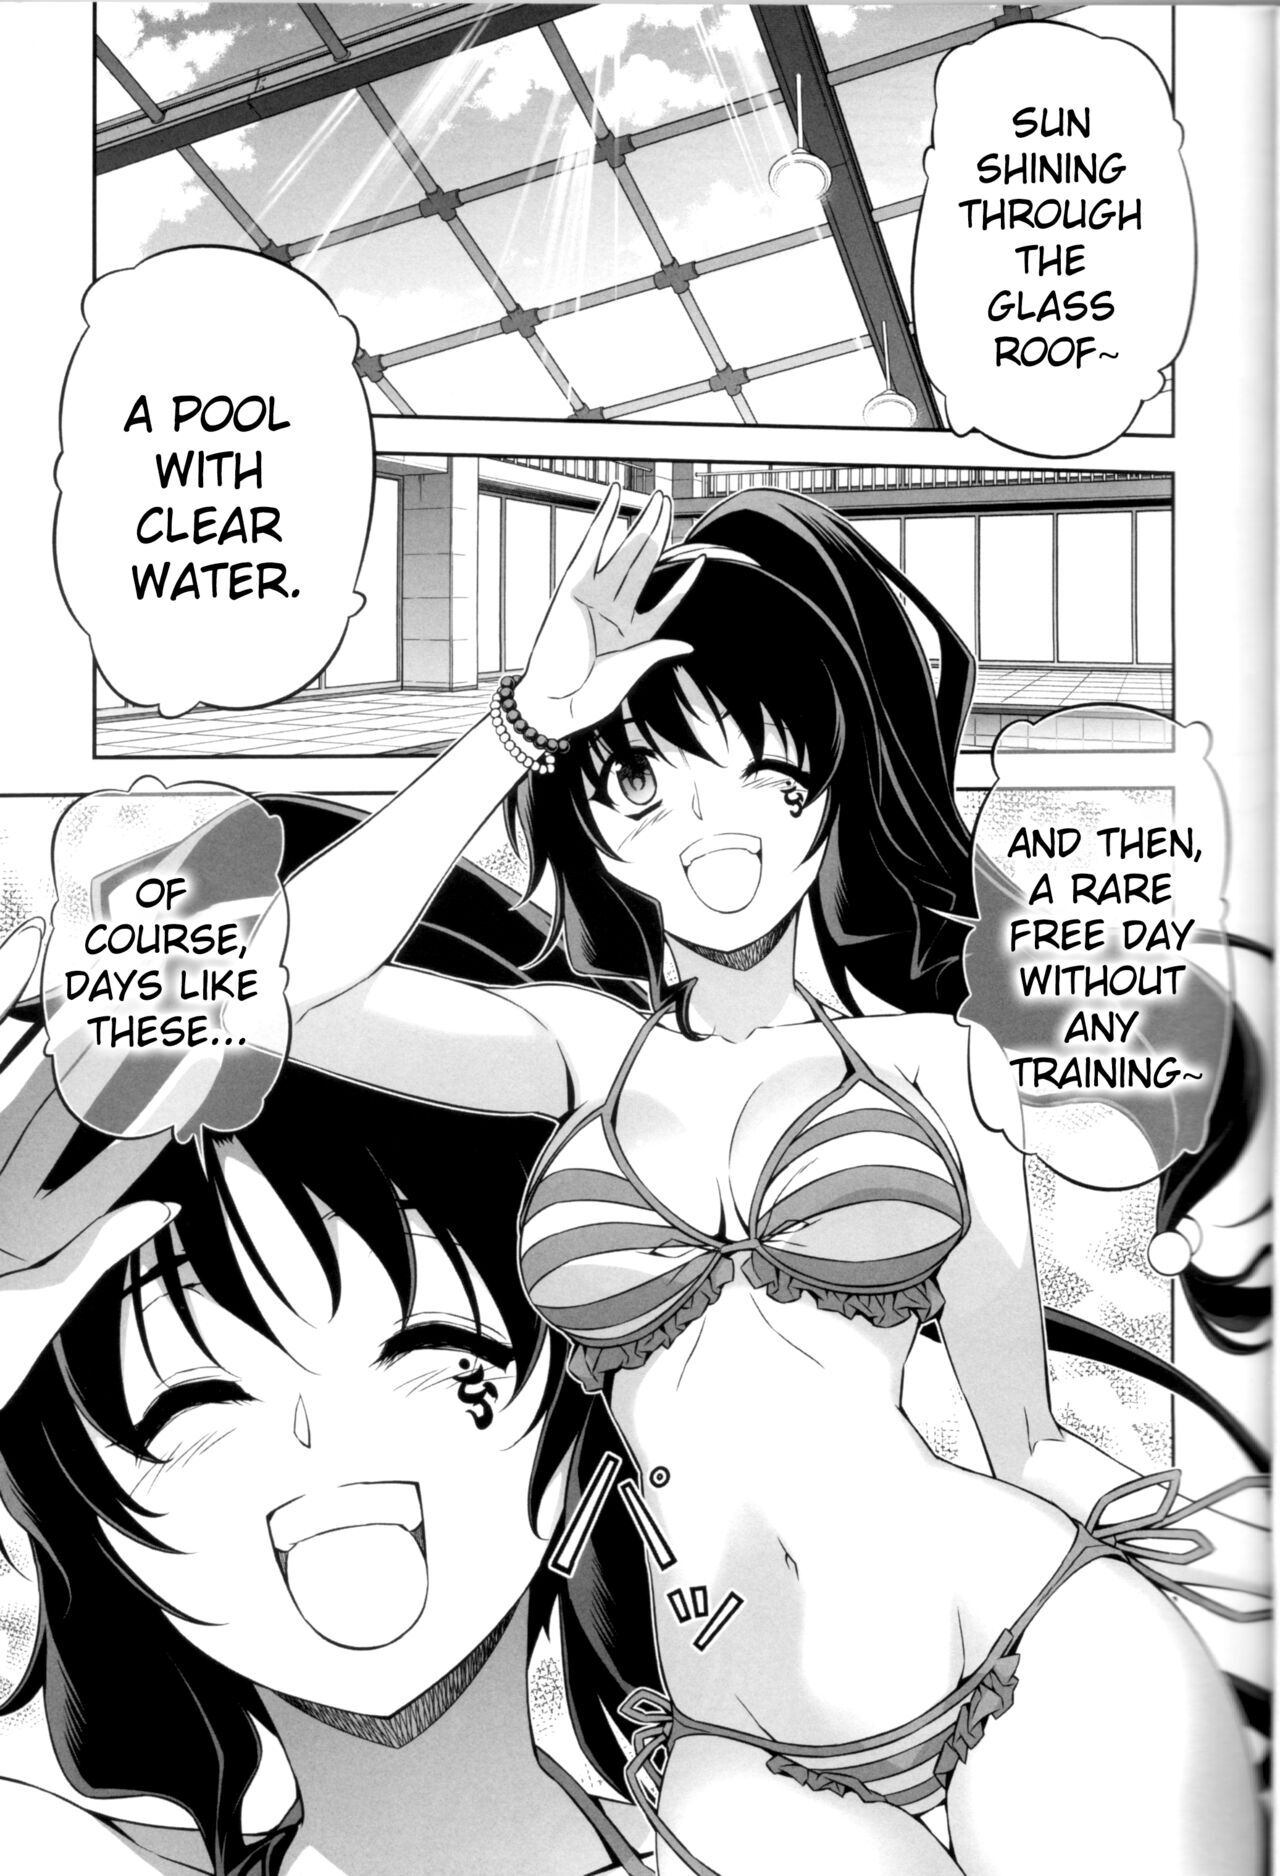 Freezing Anime Porn - Freezing - Hentai Manga, Doujins, XXX & Anime Porn